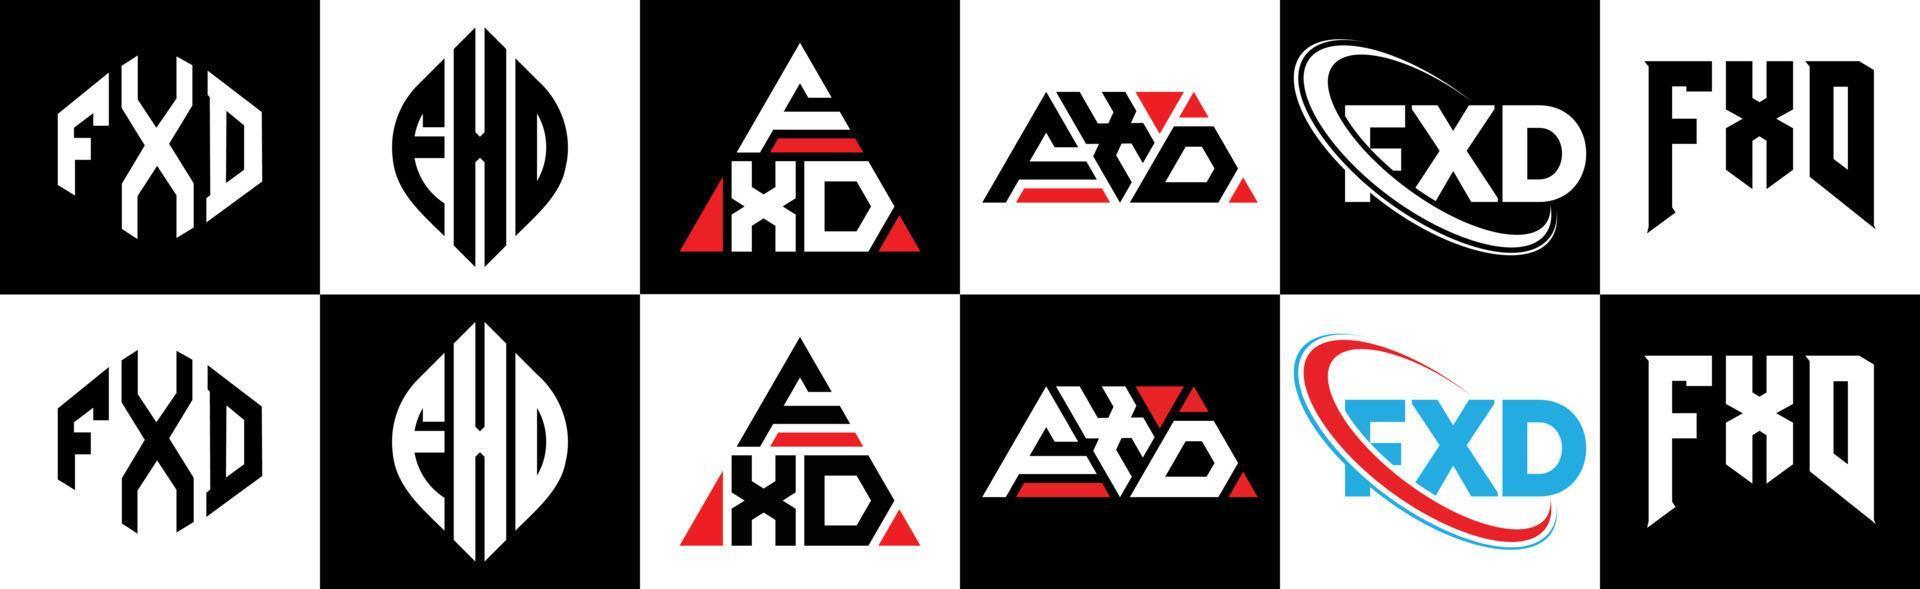 fxd-Buchstaben-Logo-Design in sechs Stilen. fxd Polygon, Kreis, Dreieck, Sechseck, flacher und einfacher Stil mit schwarz-weißem Buchstabenlogo in einer Zeichenfläche. fxd minimalistisches und klassisches Logo vektor